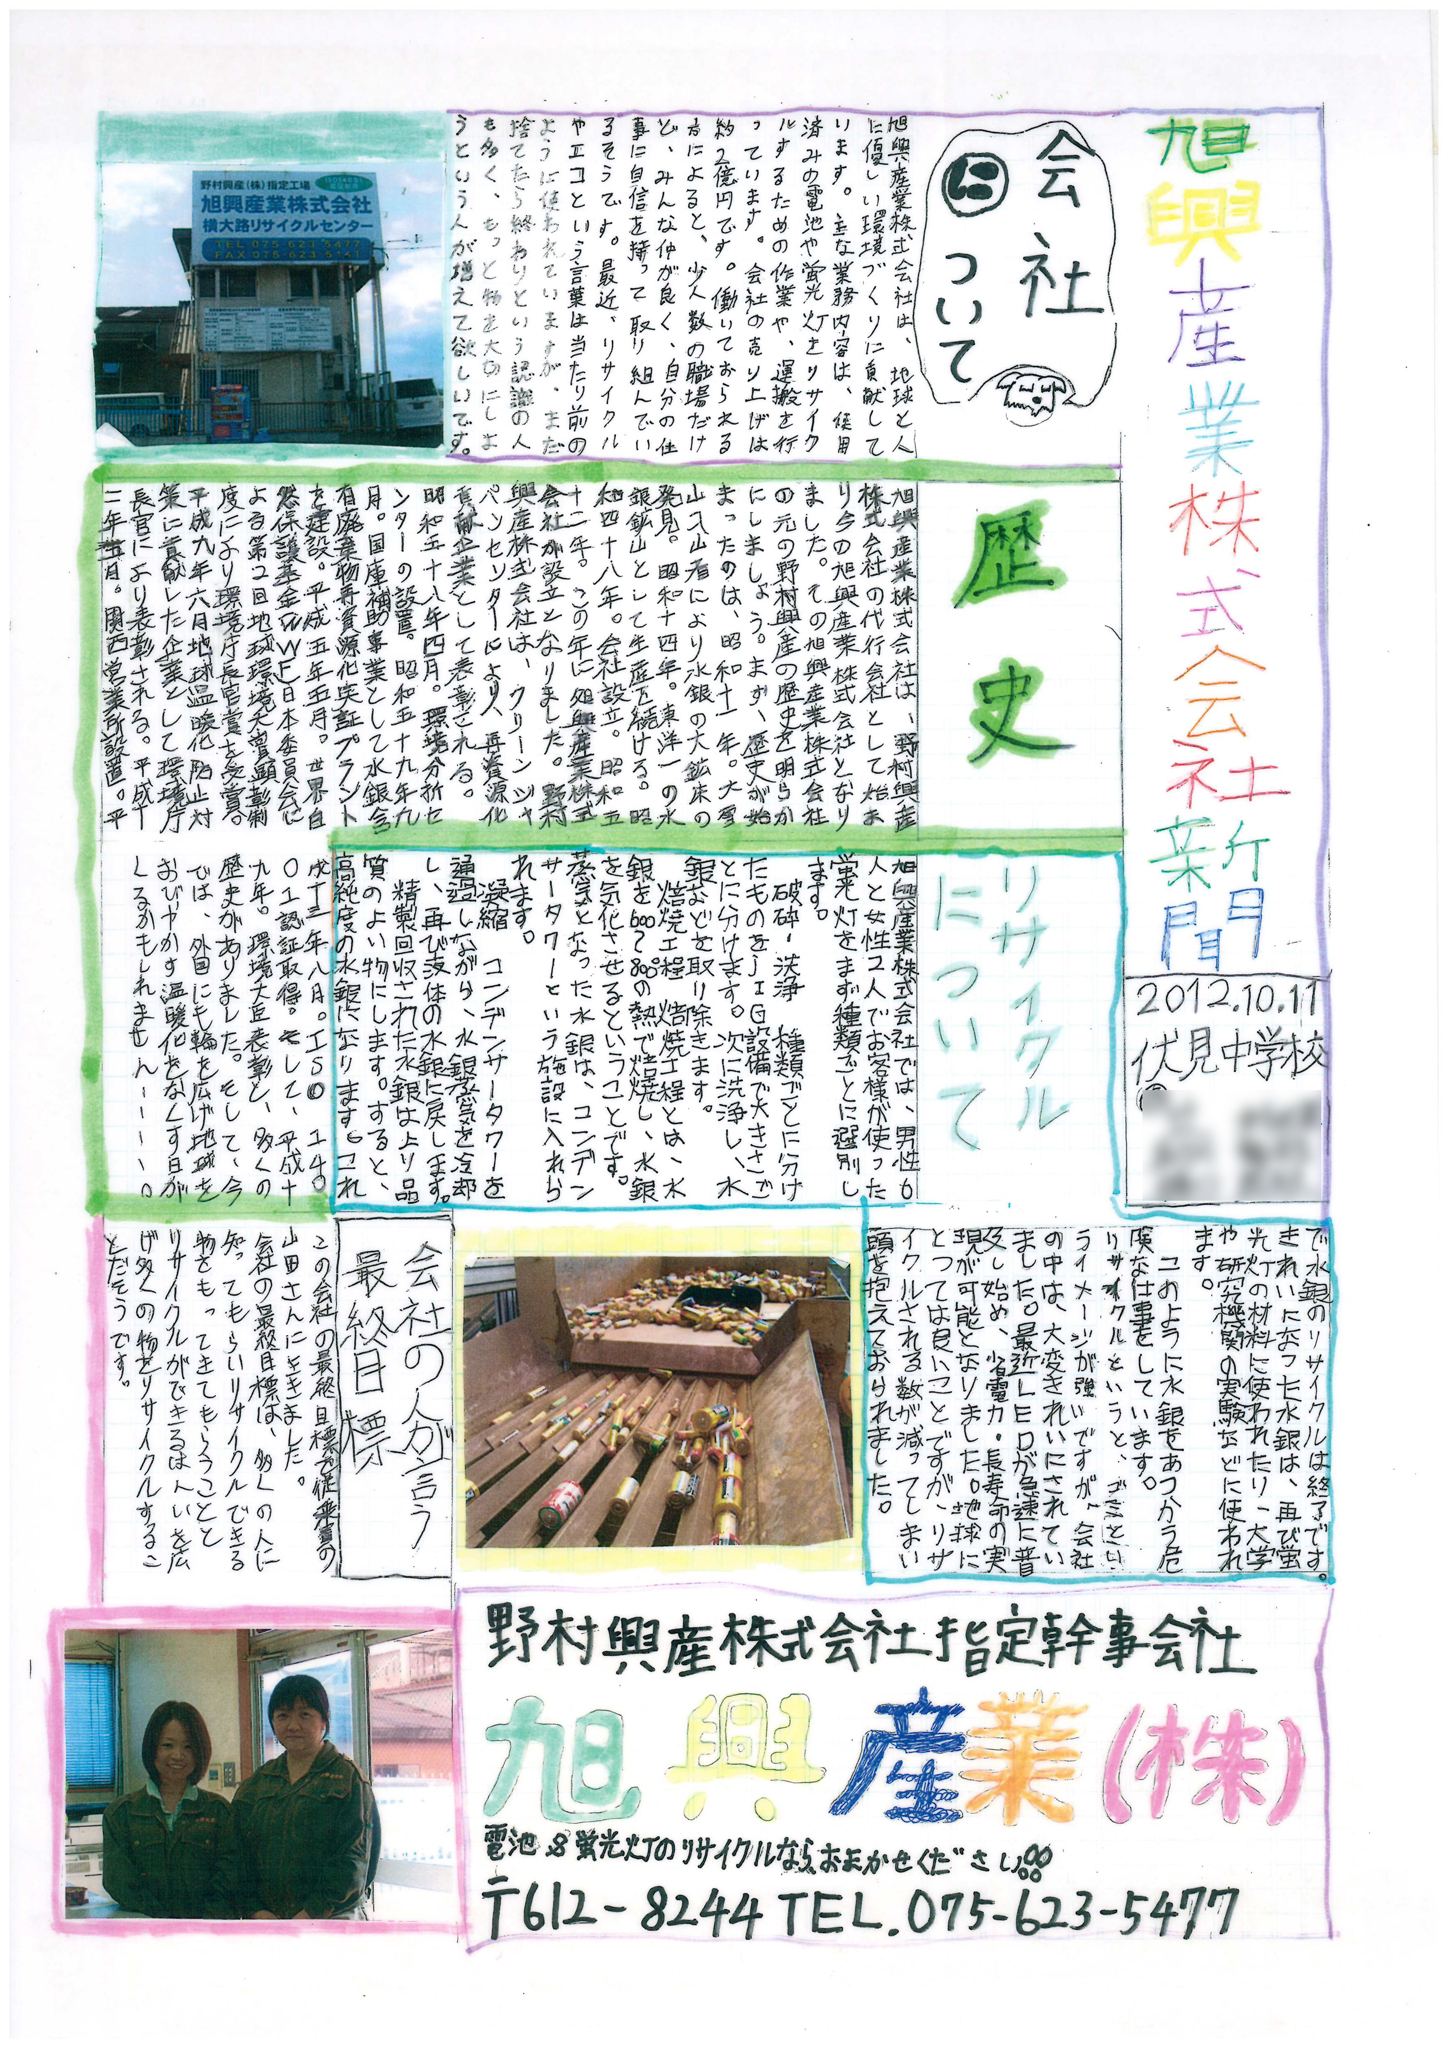 中学生の作った壁新聞